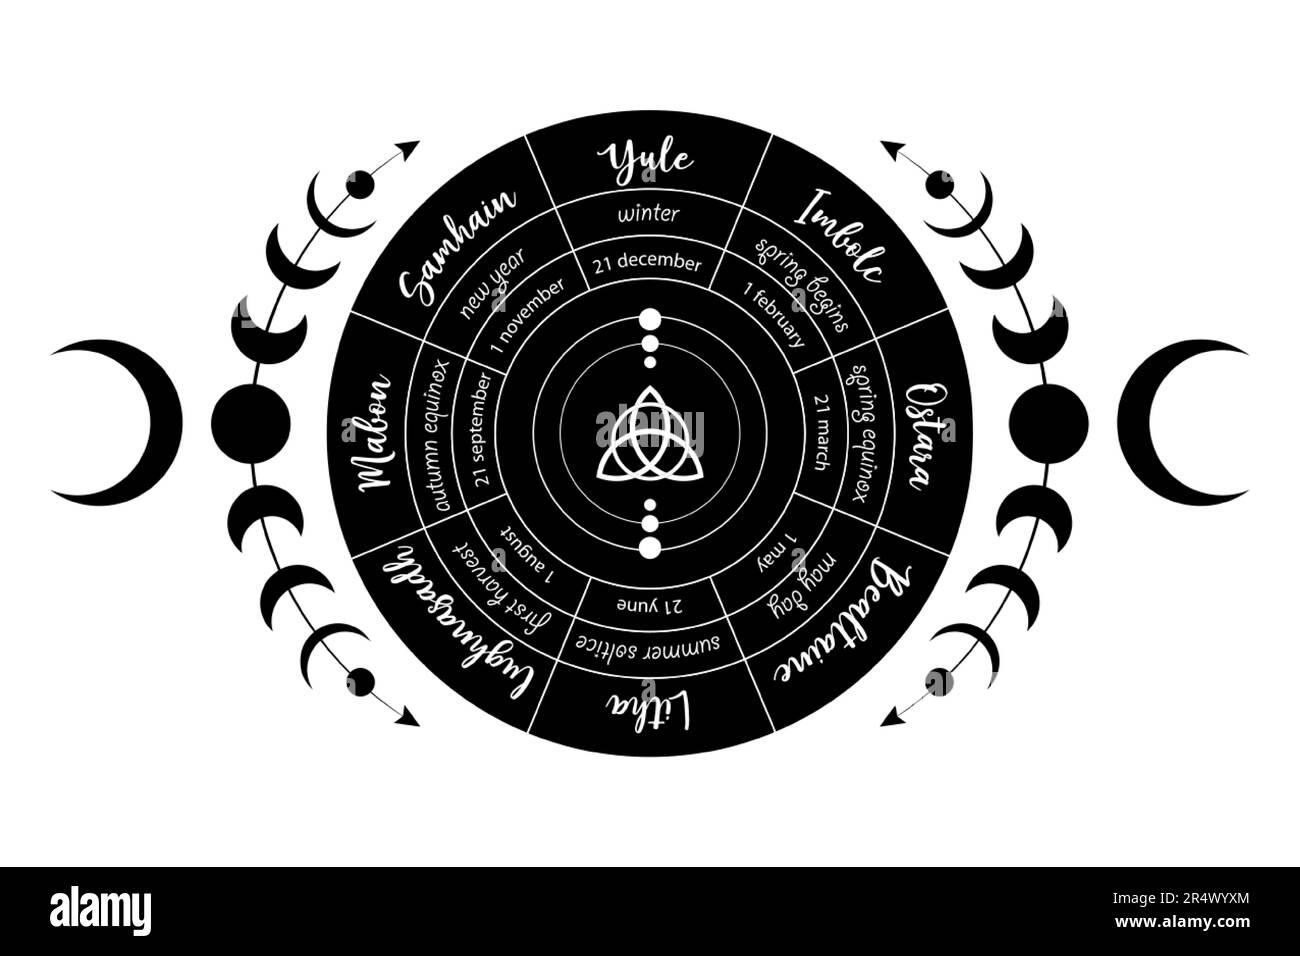 Das Rad des Jahres ist ein jährlicher Zyklus von saisonalen Festivals. Wicca-Kalender und Feiertage. Kompass mit dem Symbol Triquetra in der Mitte Stock Vektor